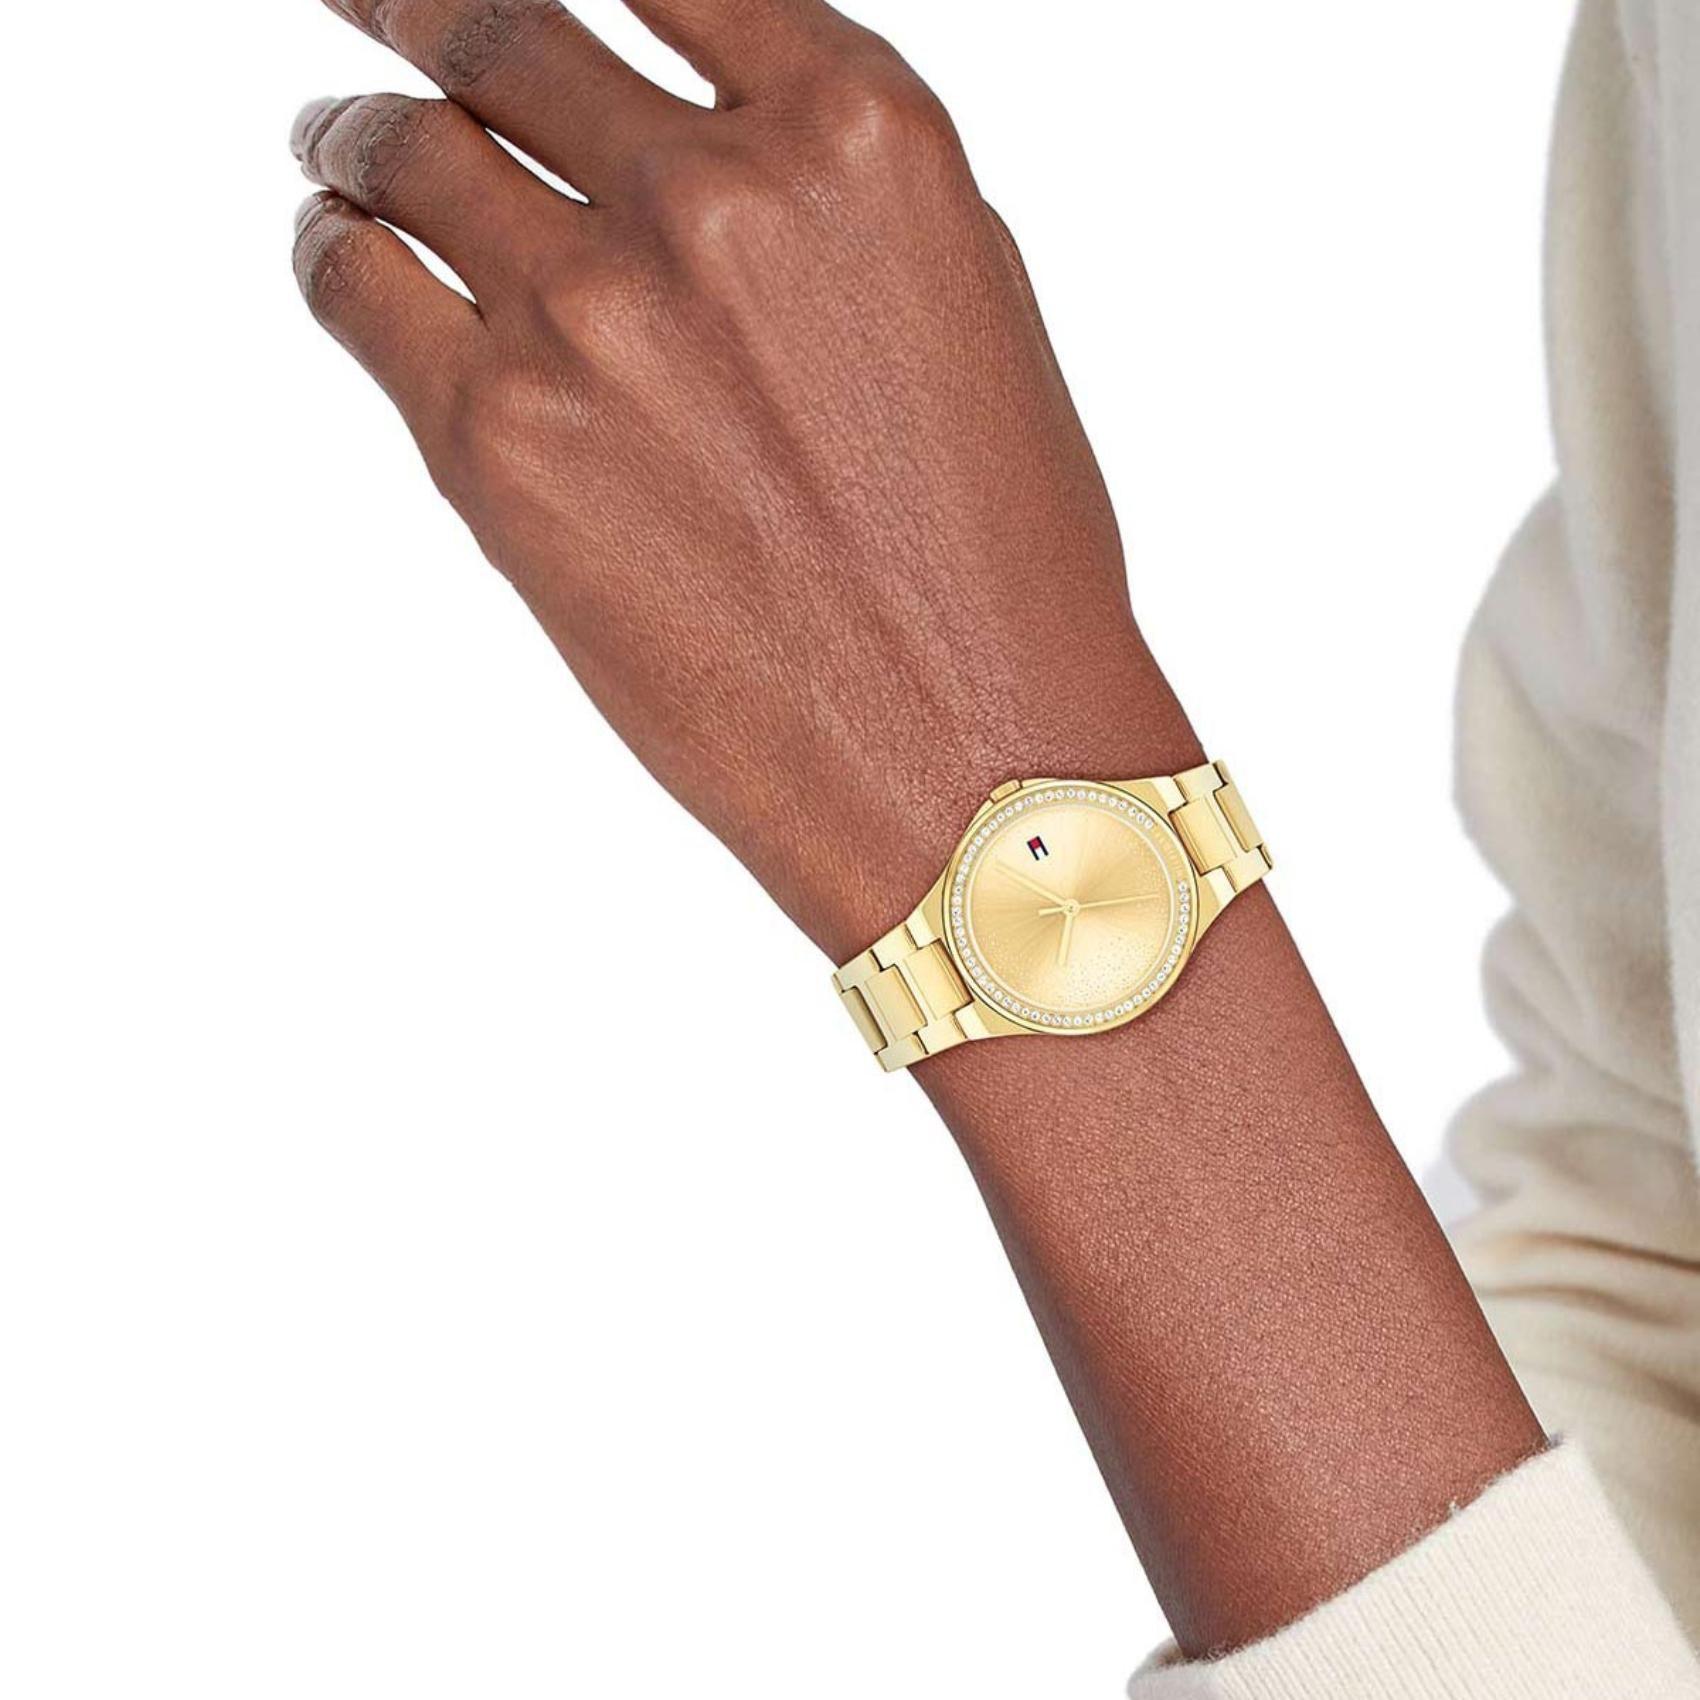 Γυναικείο ρολόι Tommy Hilfiger Juliette 1782642 με χρυσό ατσάλινο μπρασελέ και χρυσό καντράν διαμέτρου 36mm με ζιργκόν.